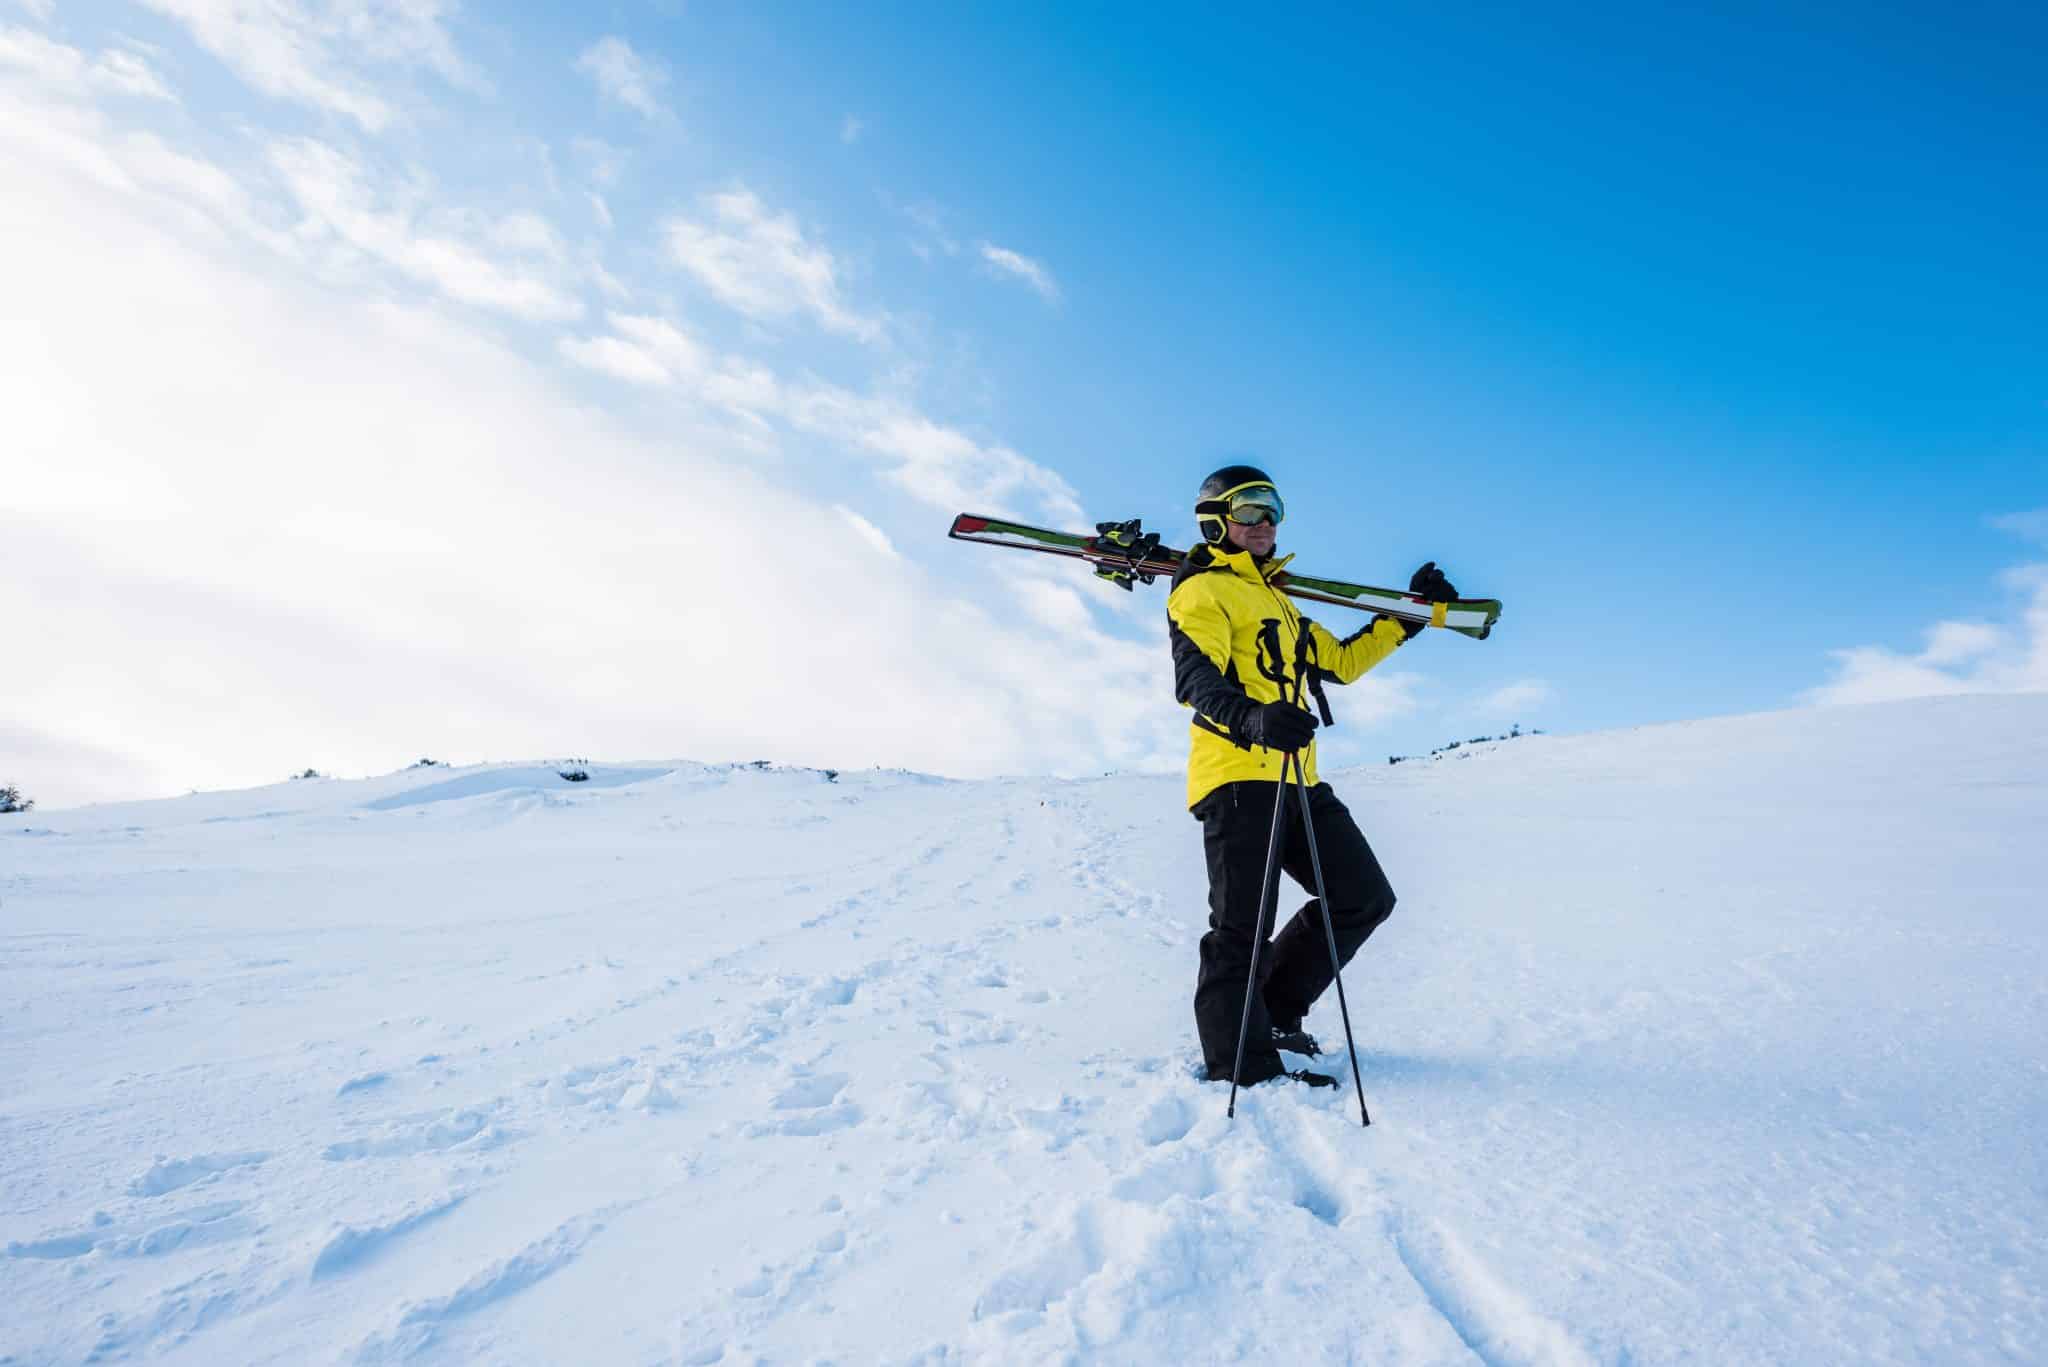 Ski alpin ou ski de randonnée : Deux mondes distincts sur les pistes